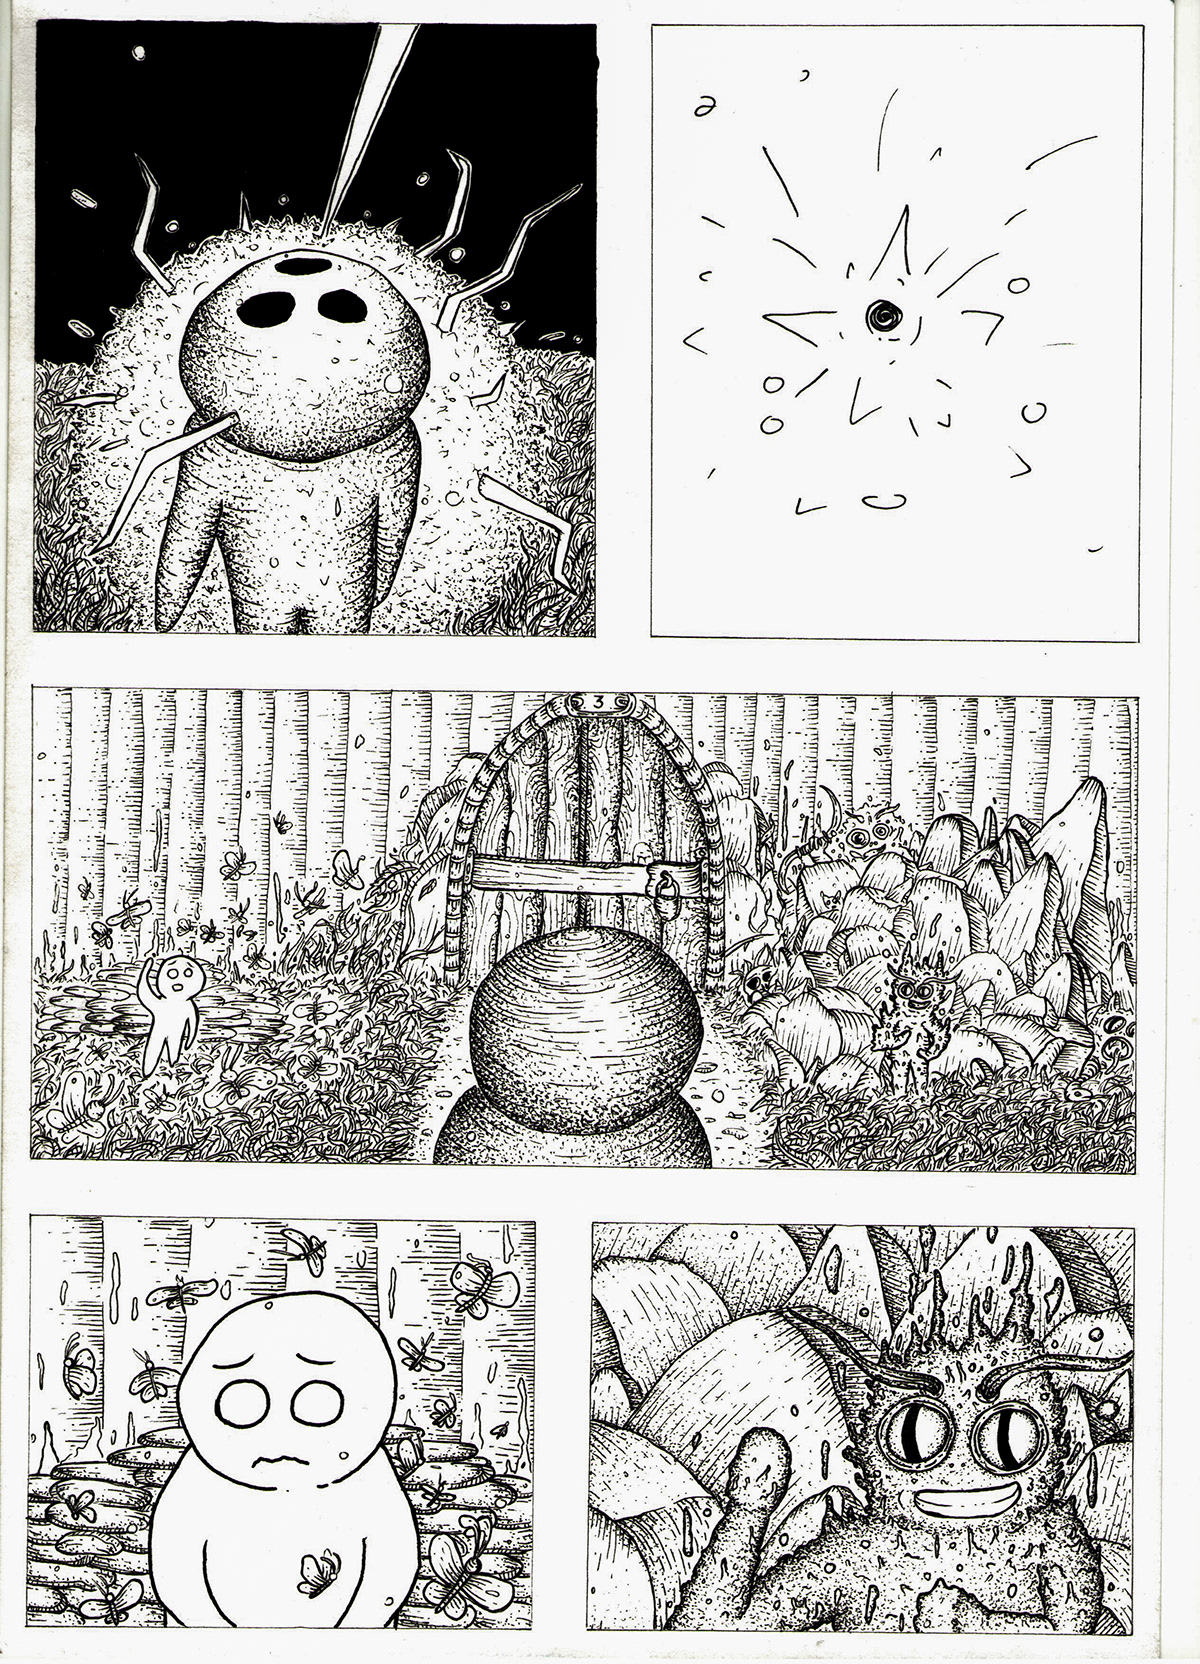 comics art ILLUSTRATION  graphics ink pen